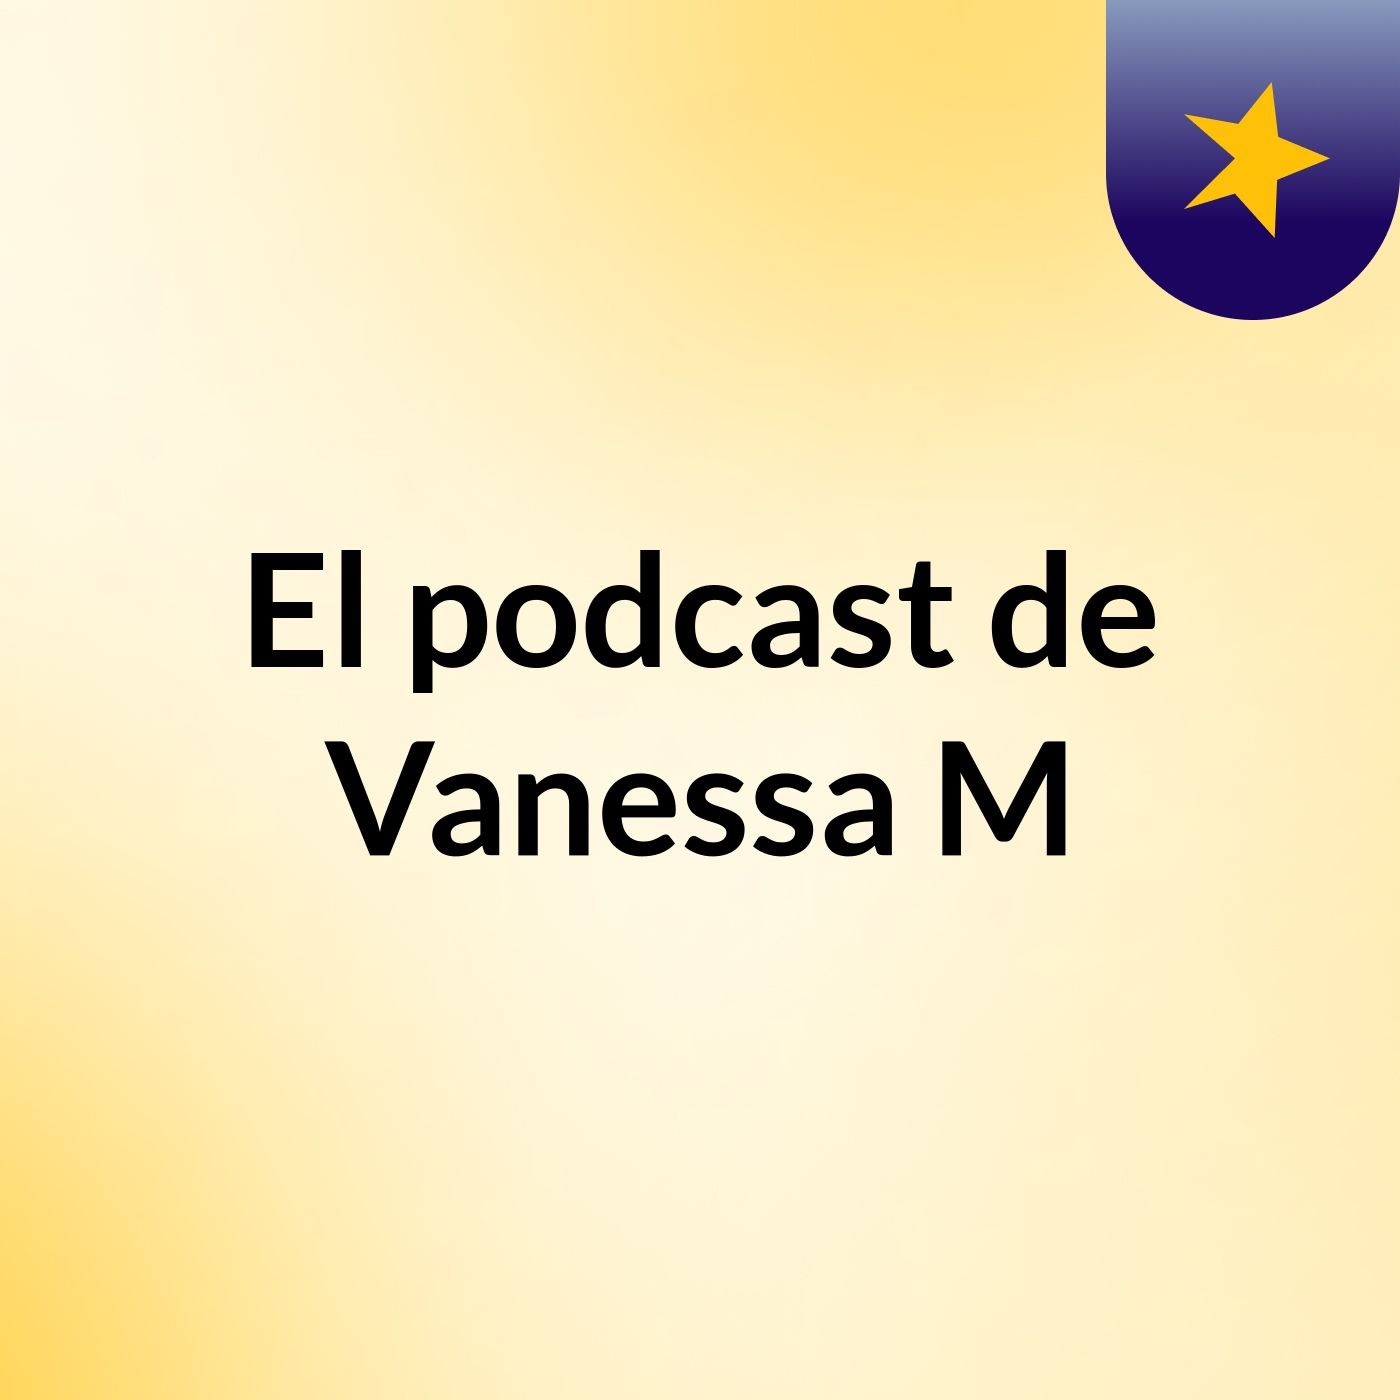 El podcast de Vanessa M